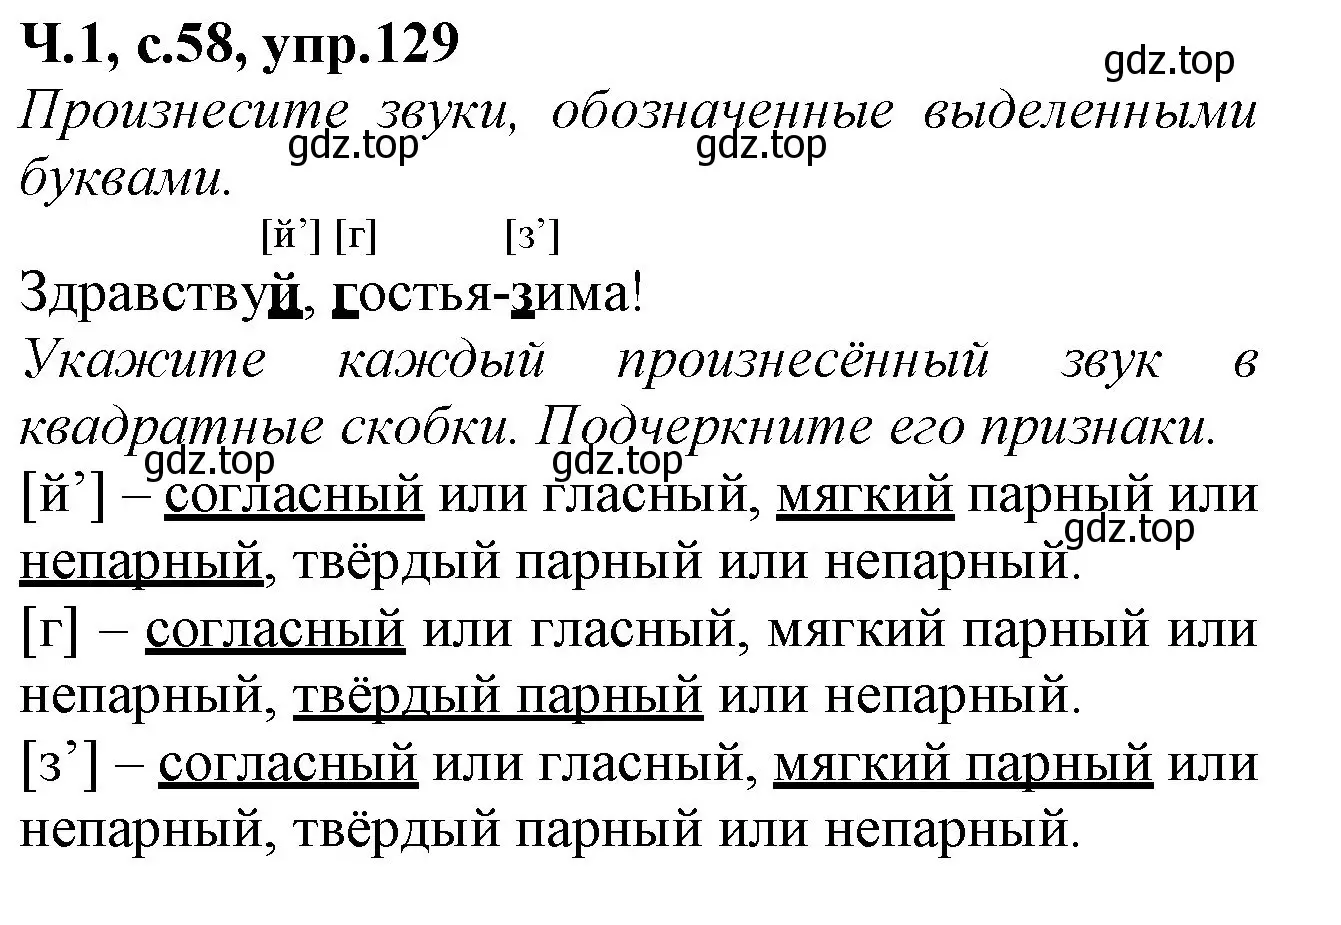 Решение номер 129 (страница 58) гдз по русскому языку 2 класс Канакина, рабочая тетрадь 1 часть